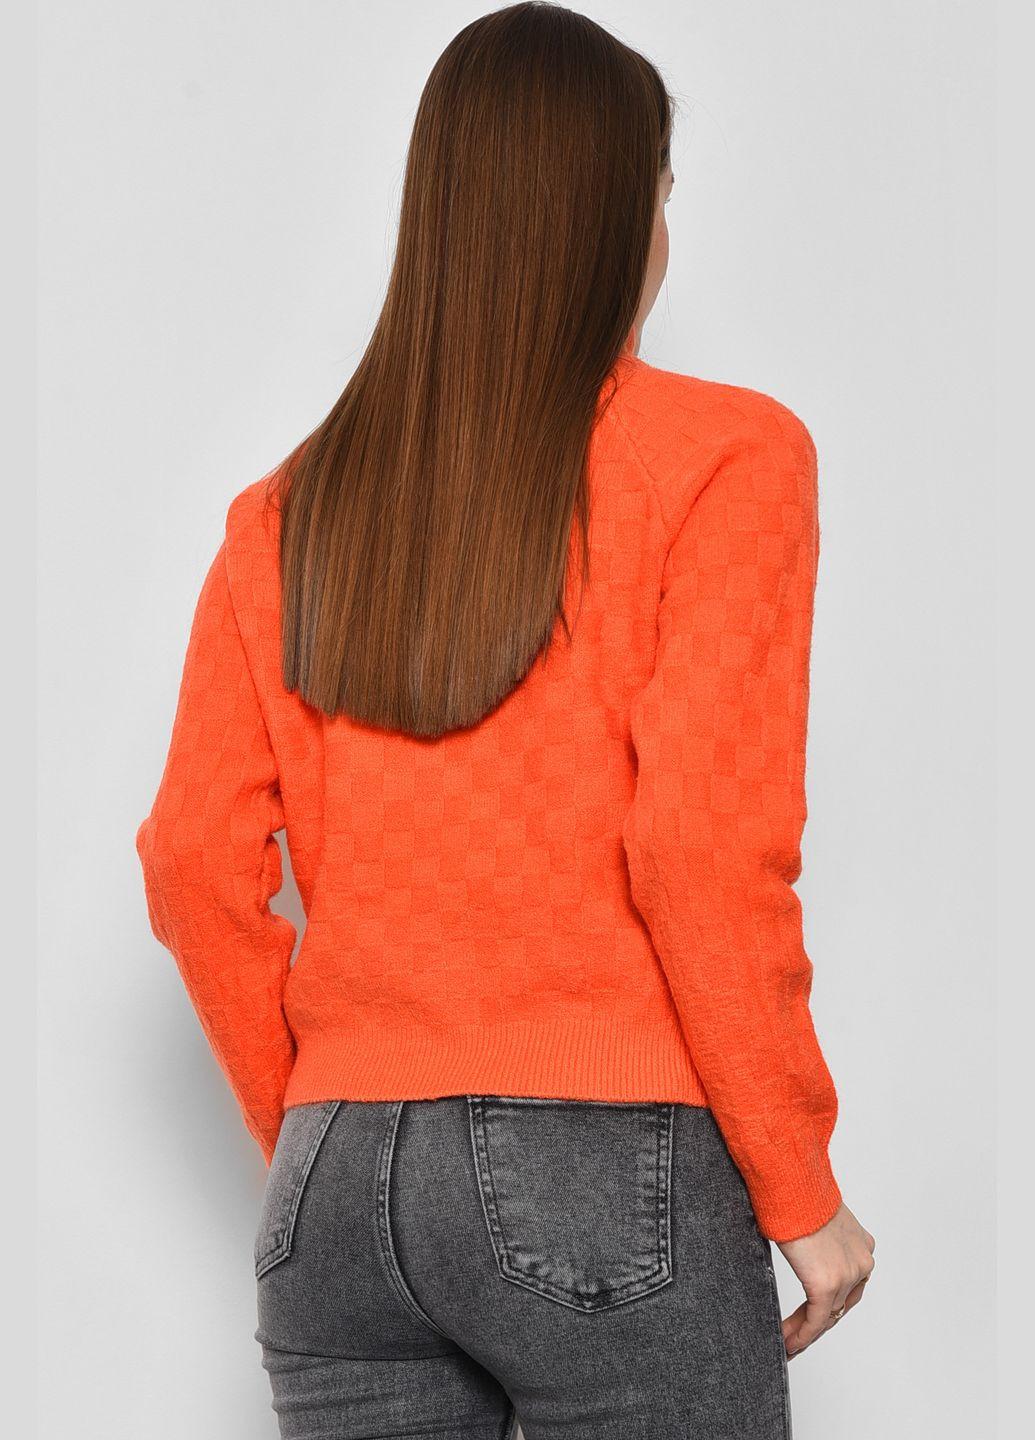 Оранжевый зимний свитер женский оранжевого цвета пуловер Let's Shop